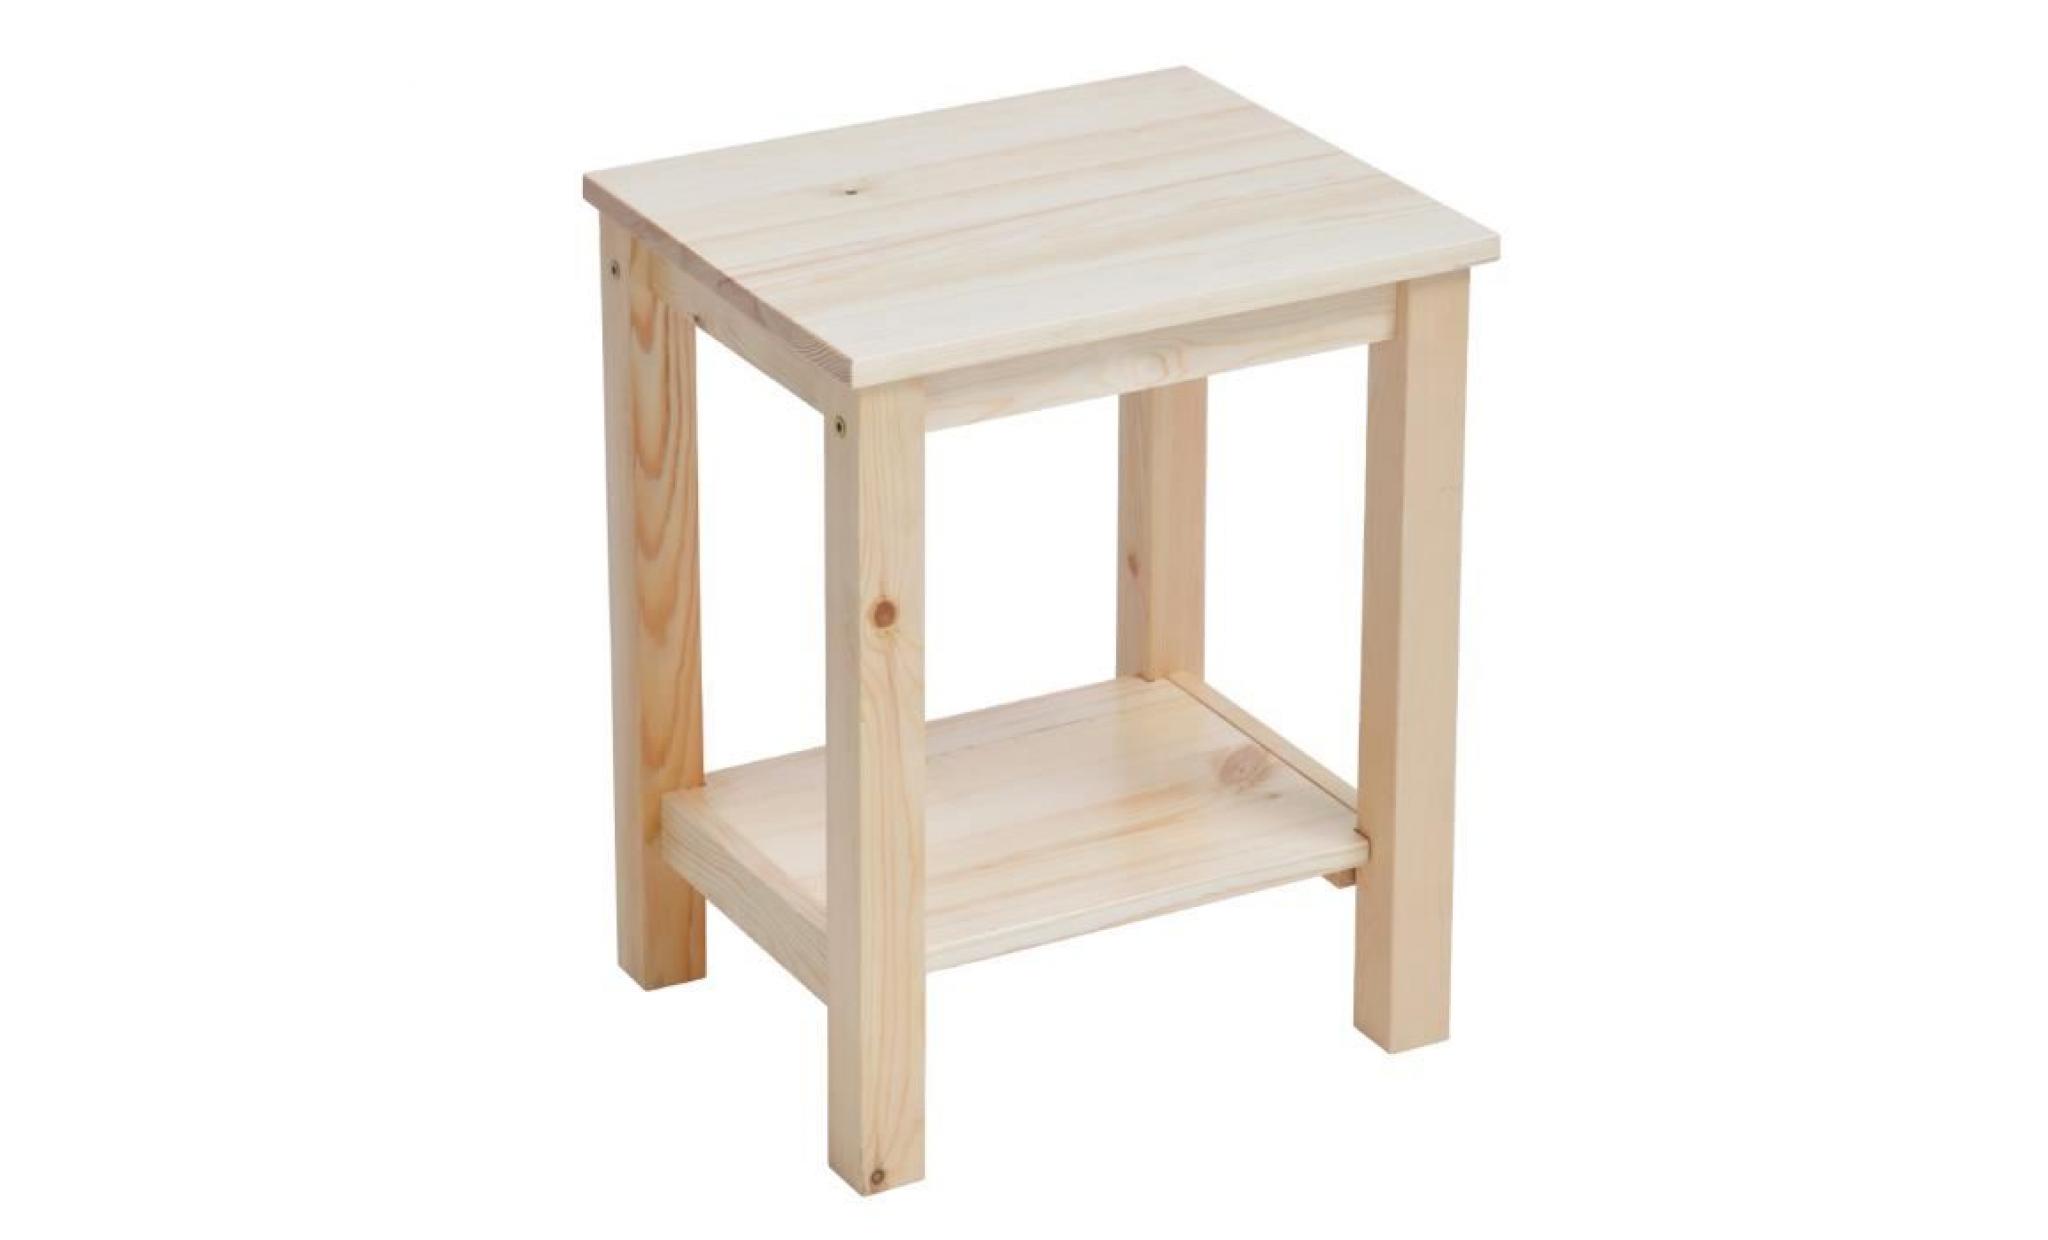 lot de 2 tables de chevet beige   tables de nuit scandinaves  en bois   homy casa   avec rangement   38 x 31.5 x 47.3 cm